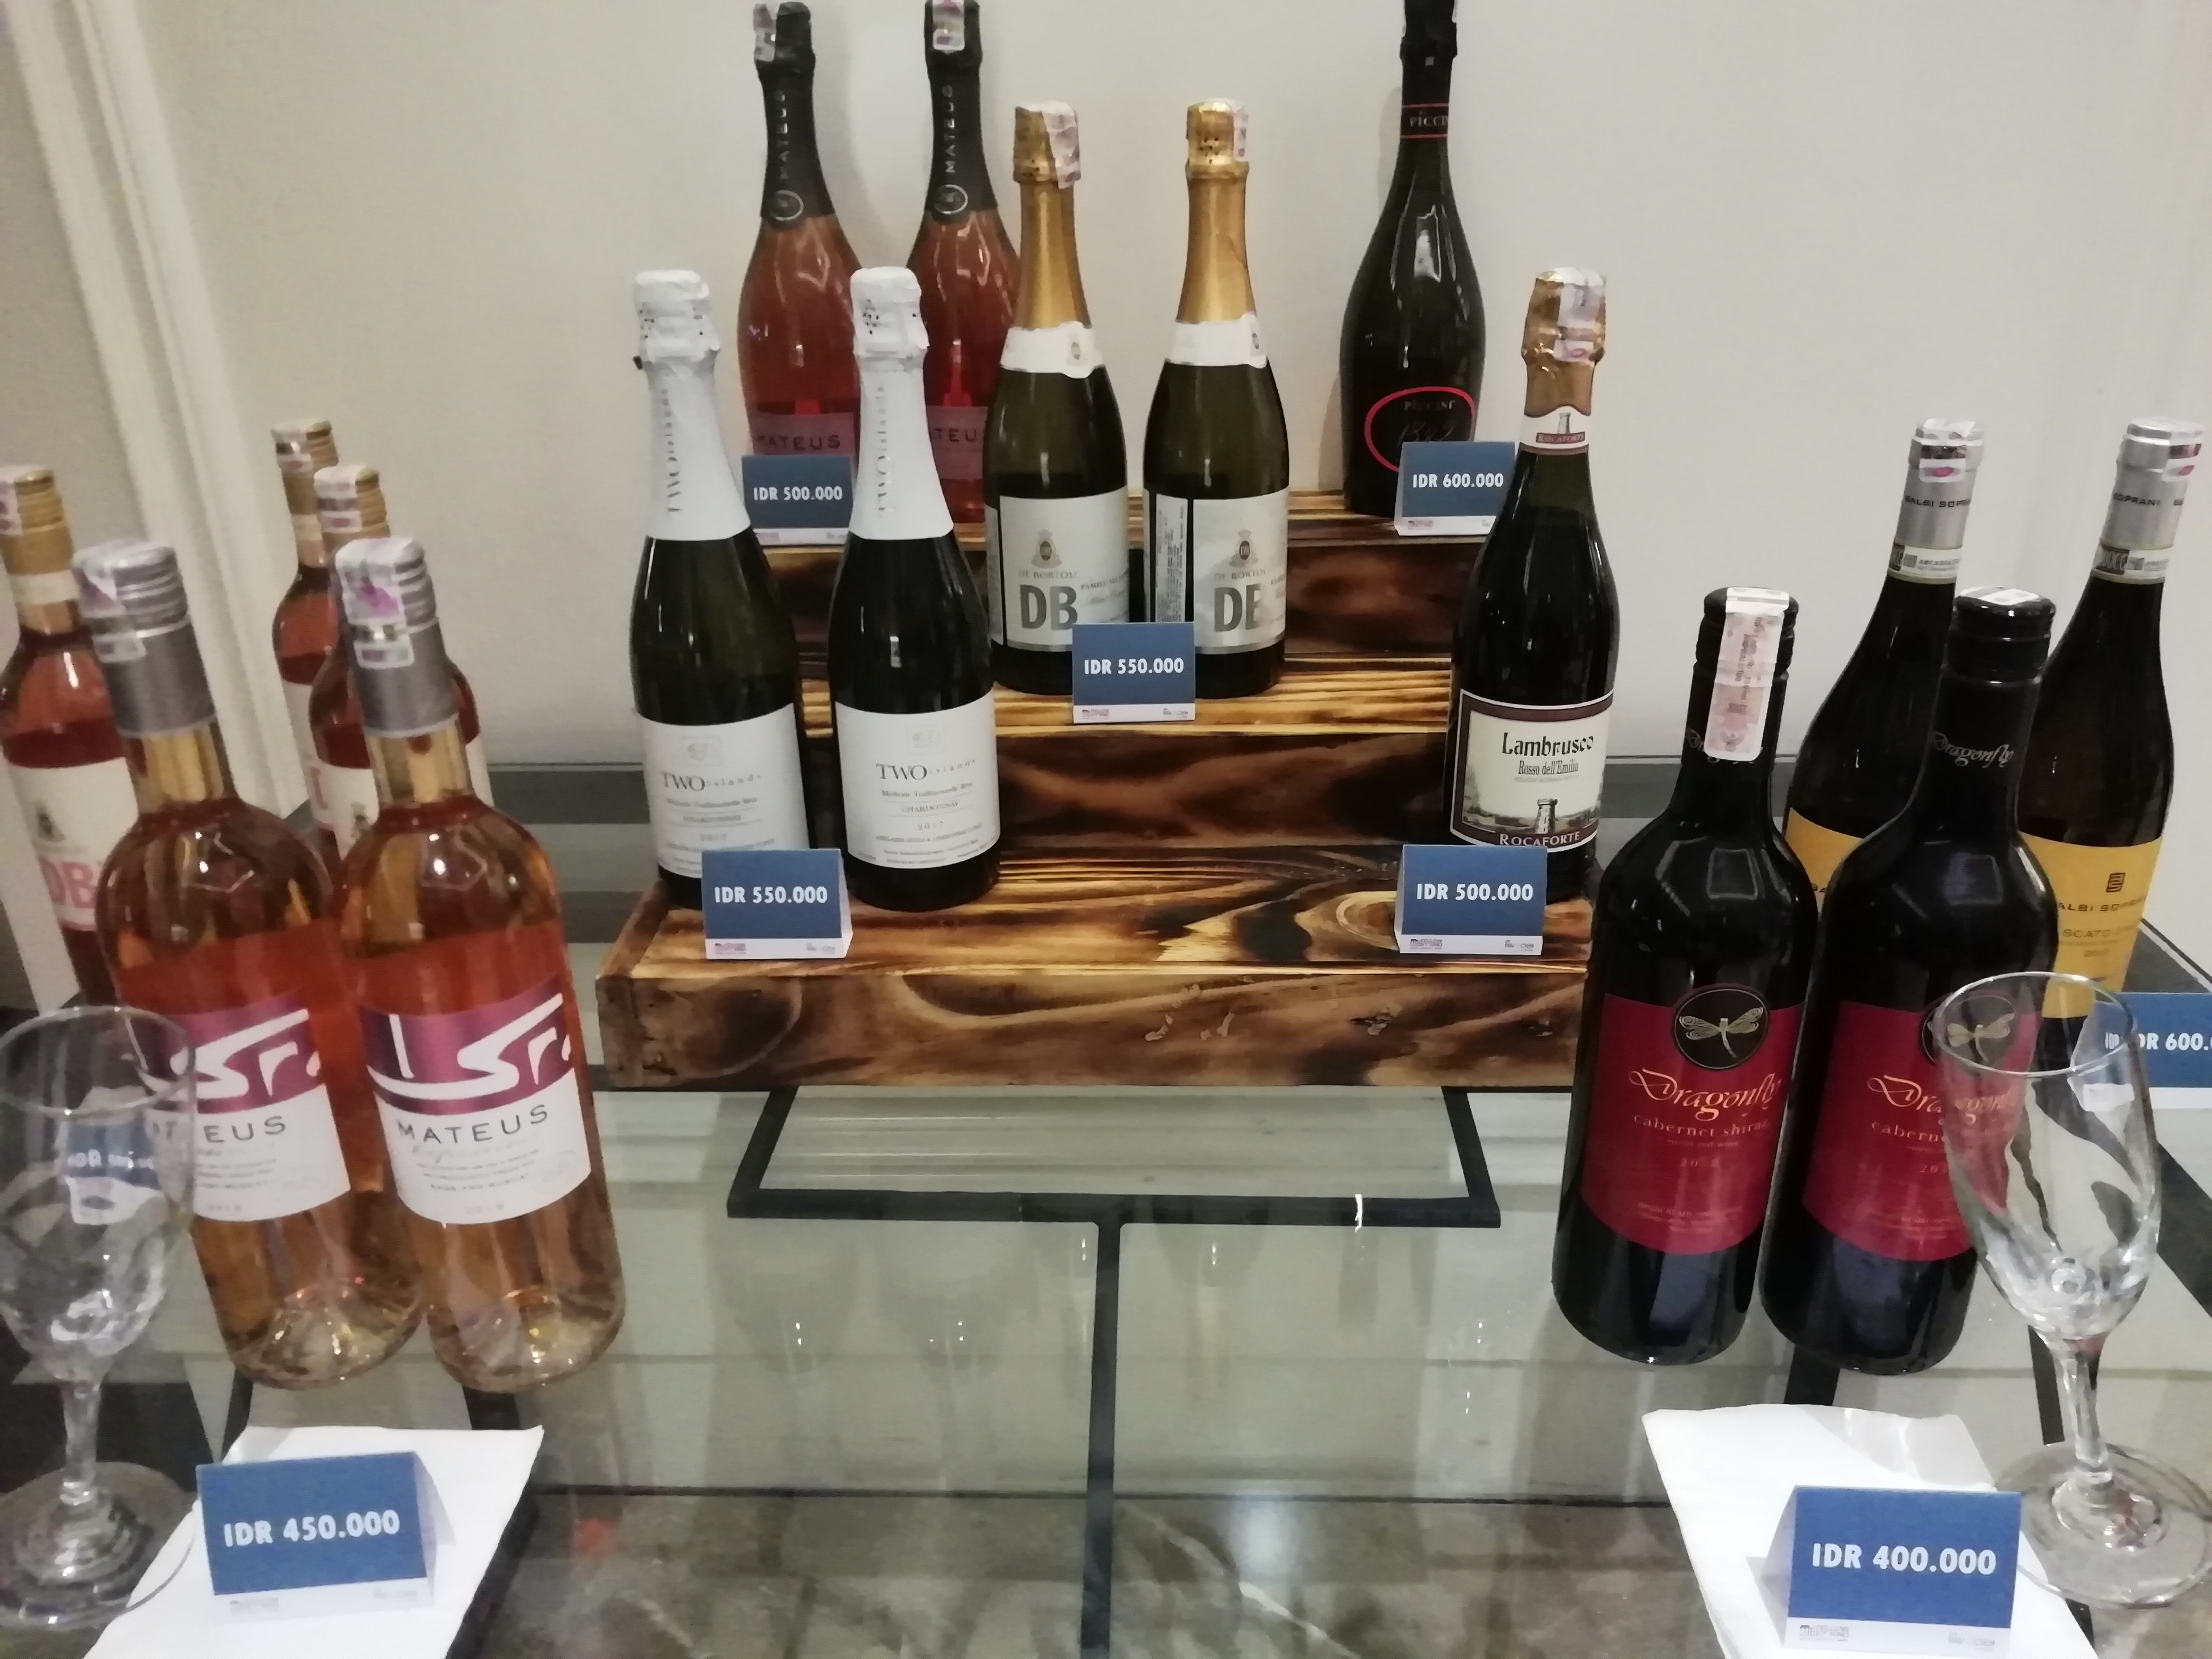 Wine Market Hadirkan 31 Jenis Wine/Bisnis-Novi